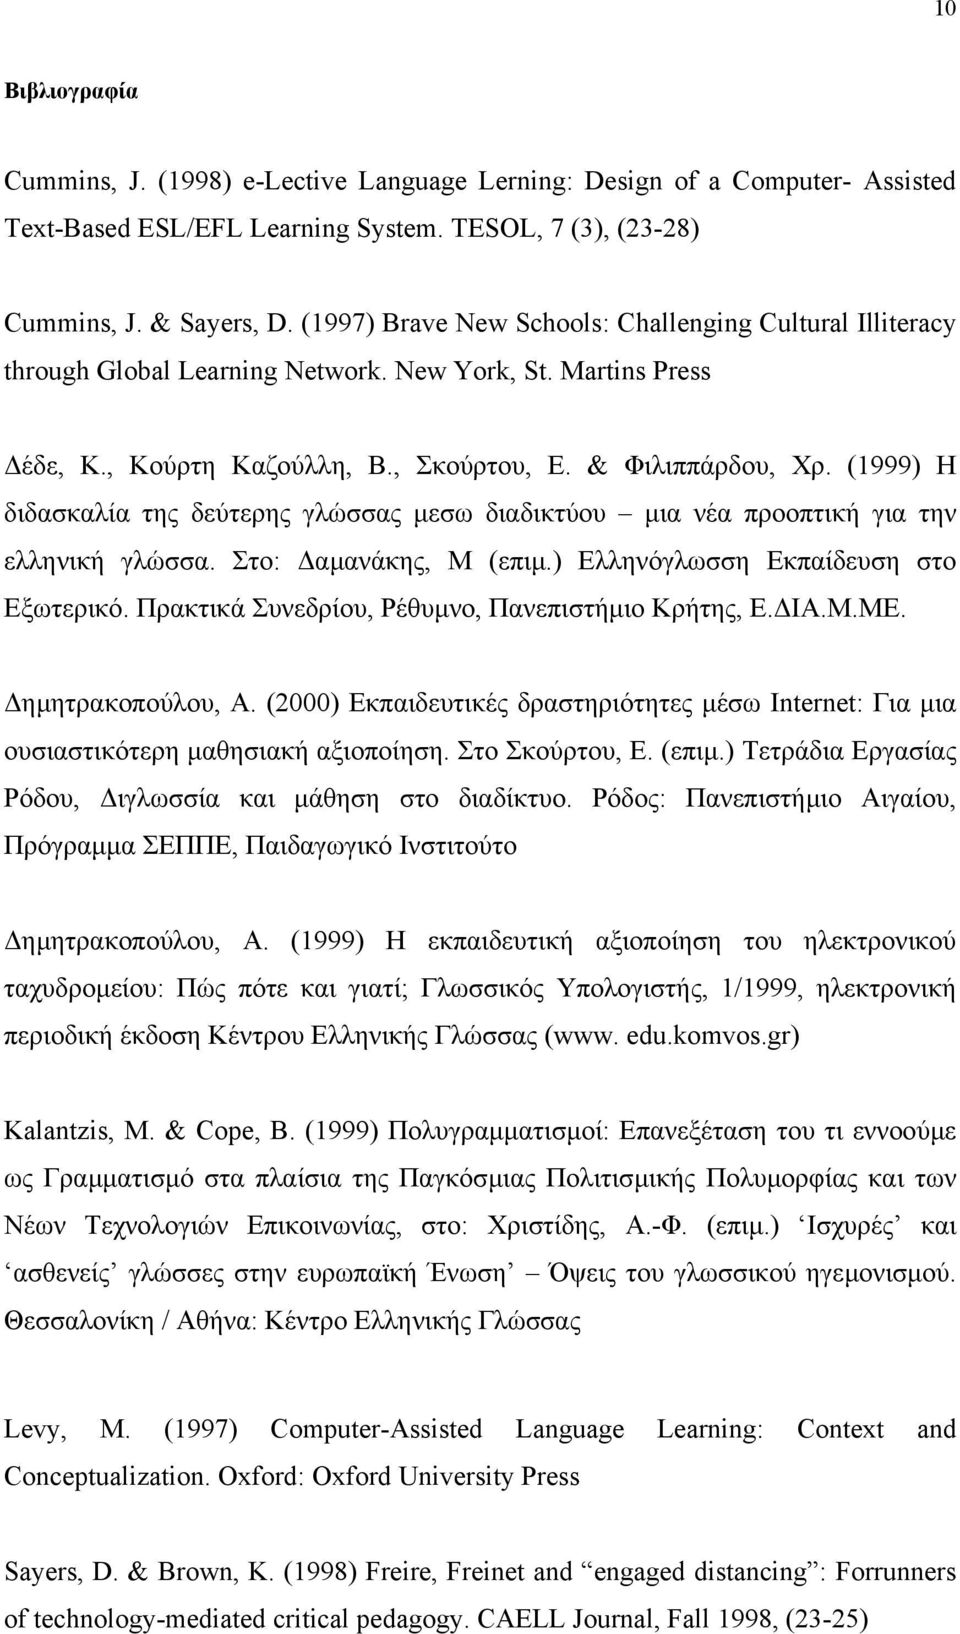 (1999) Η διδασκαλία της δεύτερης γλώσσας µεσω διαδικτύου µια νέα προοπτική για την ελληνική γλώσσα. Στο: αµανάκης, Μ (επιµ.) Ελληνόγλωσση Εκπαίδευση στο Εξωτερικό.